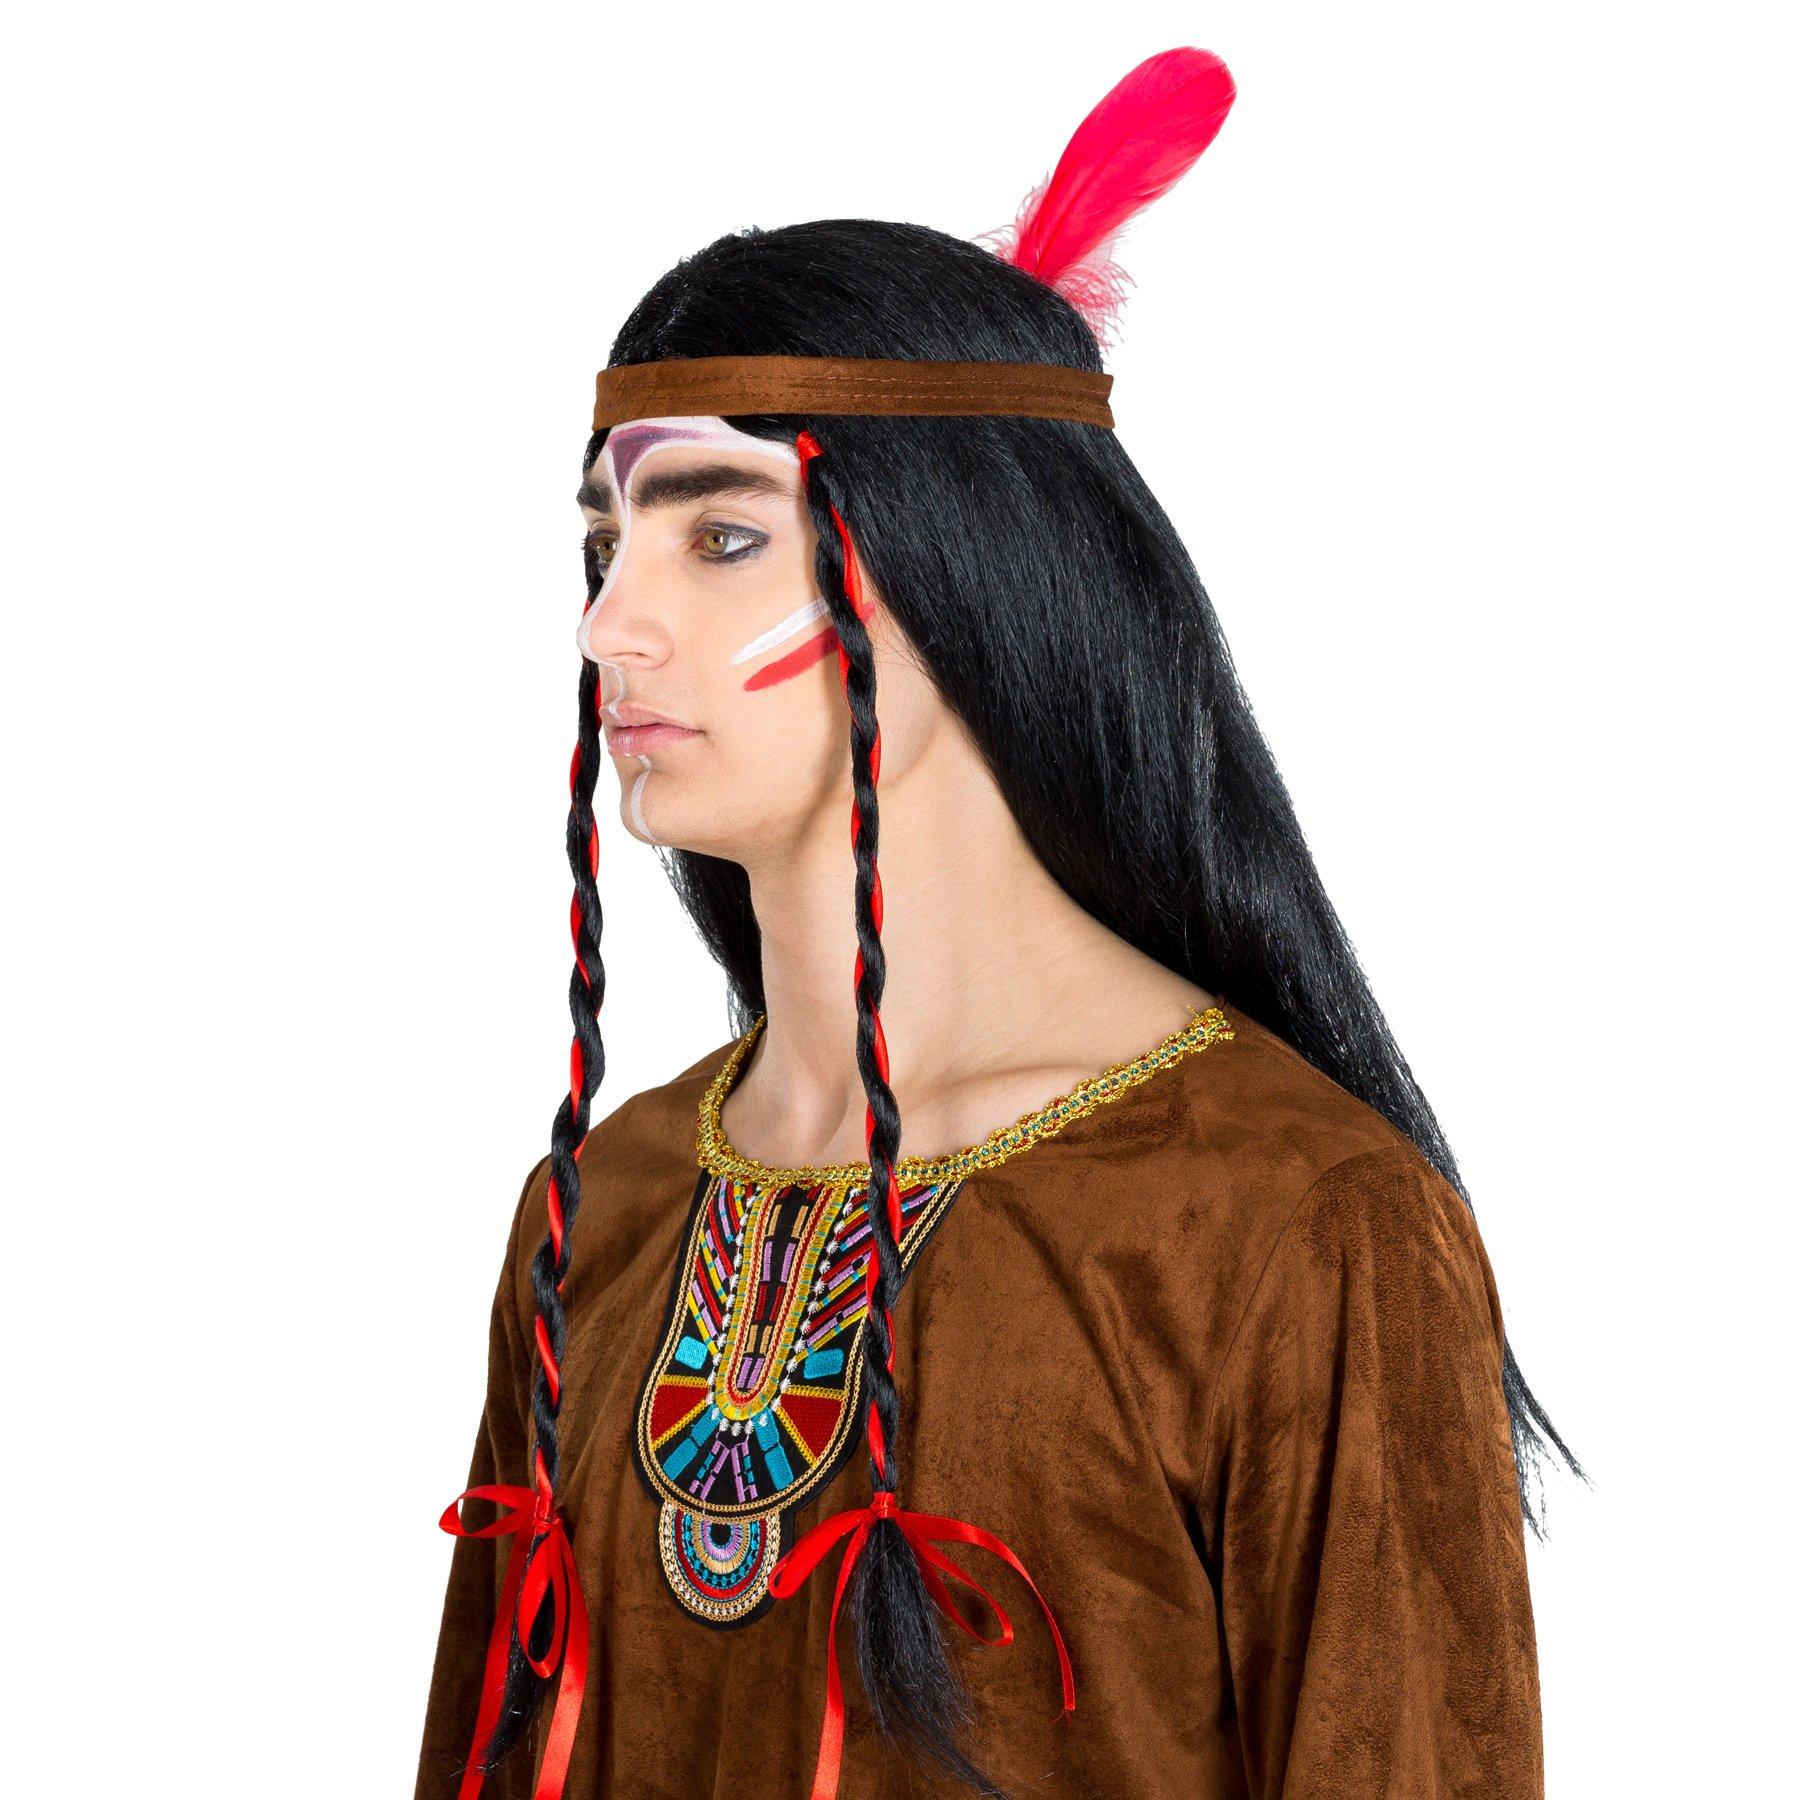 Tectake  Costume da uomo - Indiano apache Grande Bisonte 